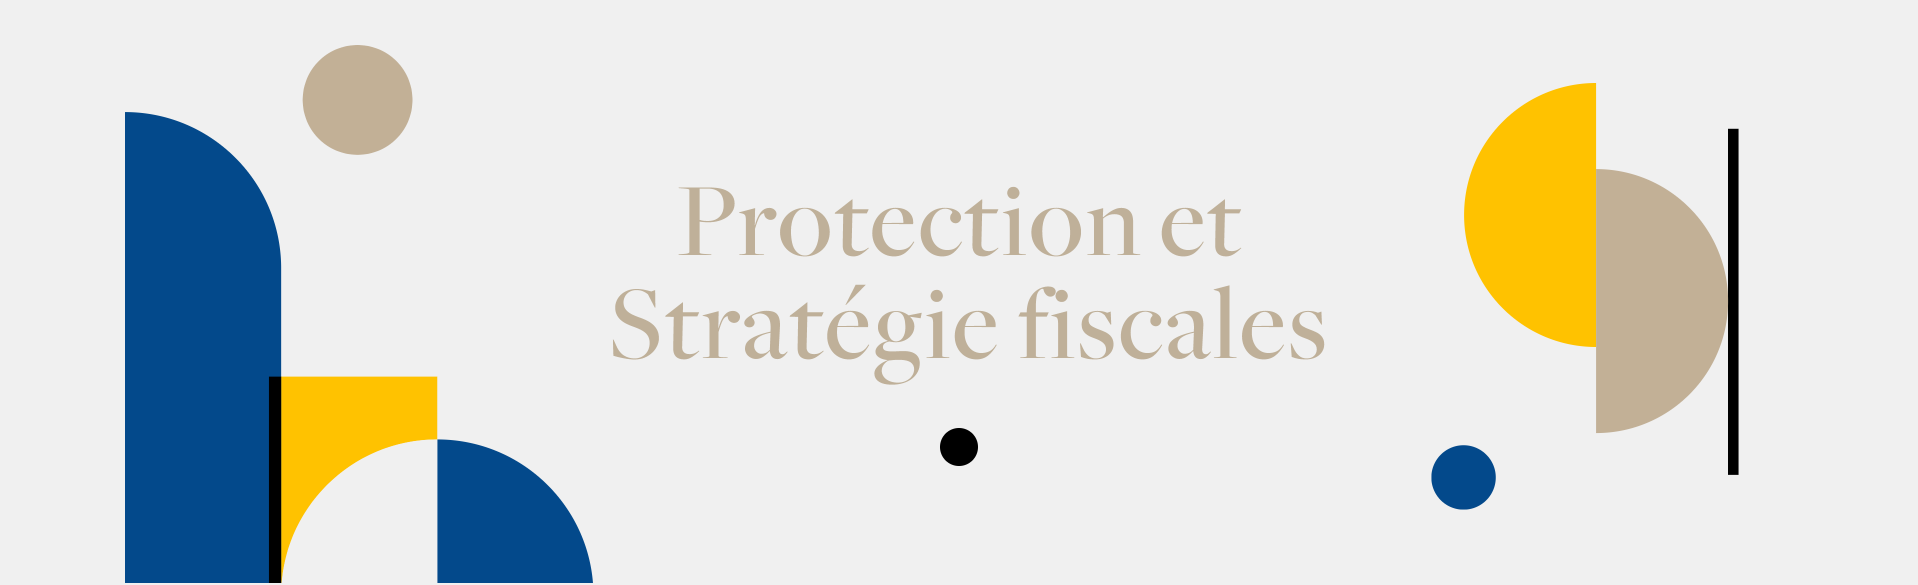 protection et stratégies fiscales